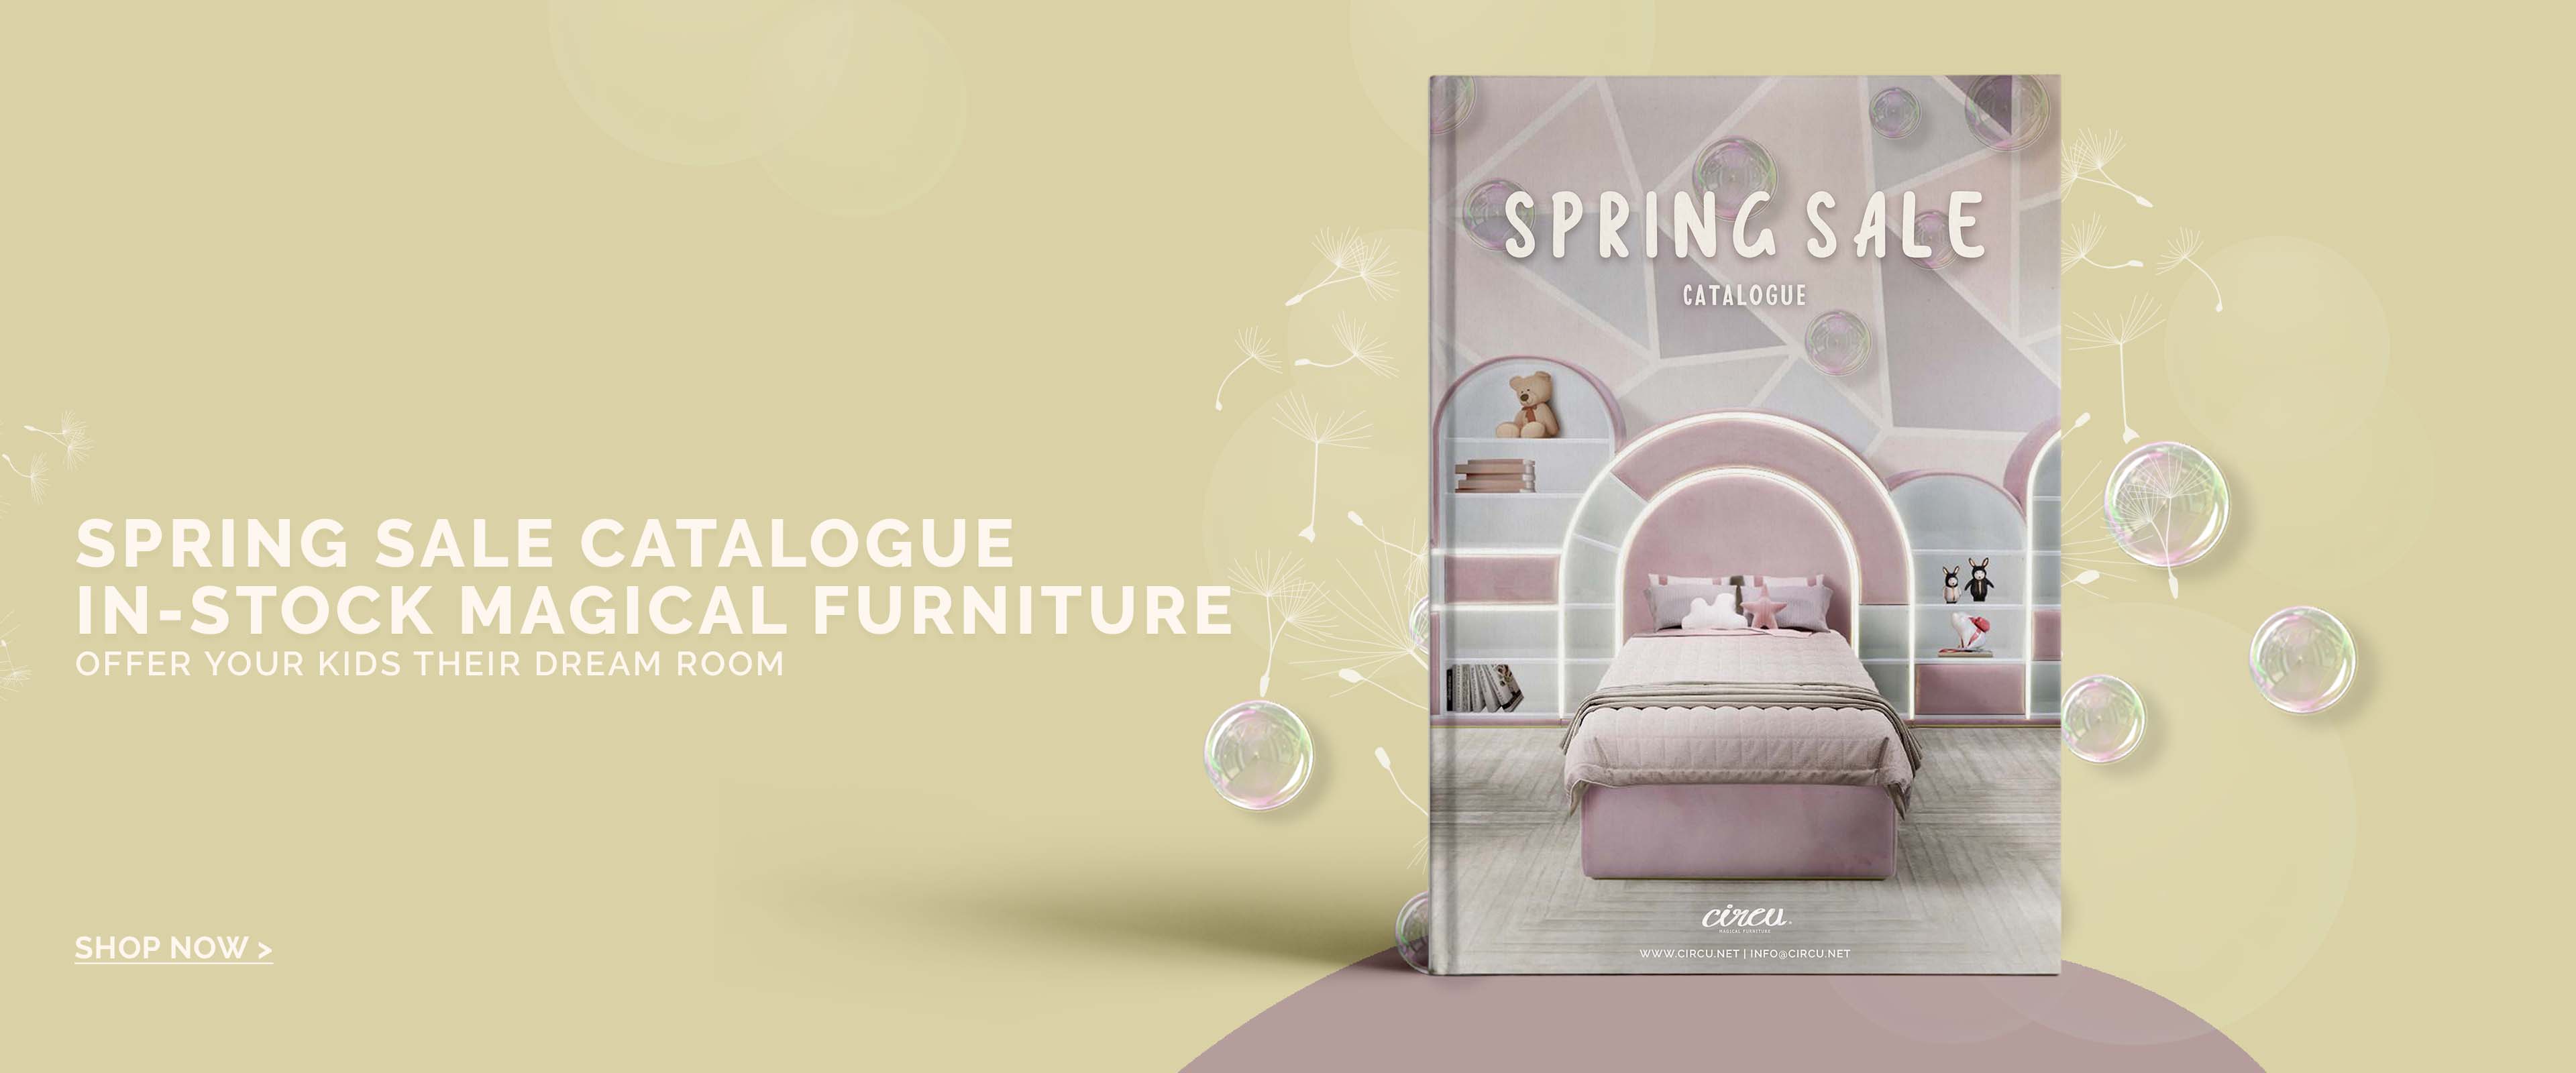 Spring Sale Circu Magical Furniture